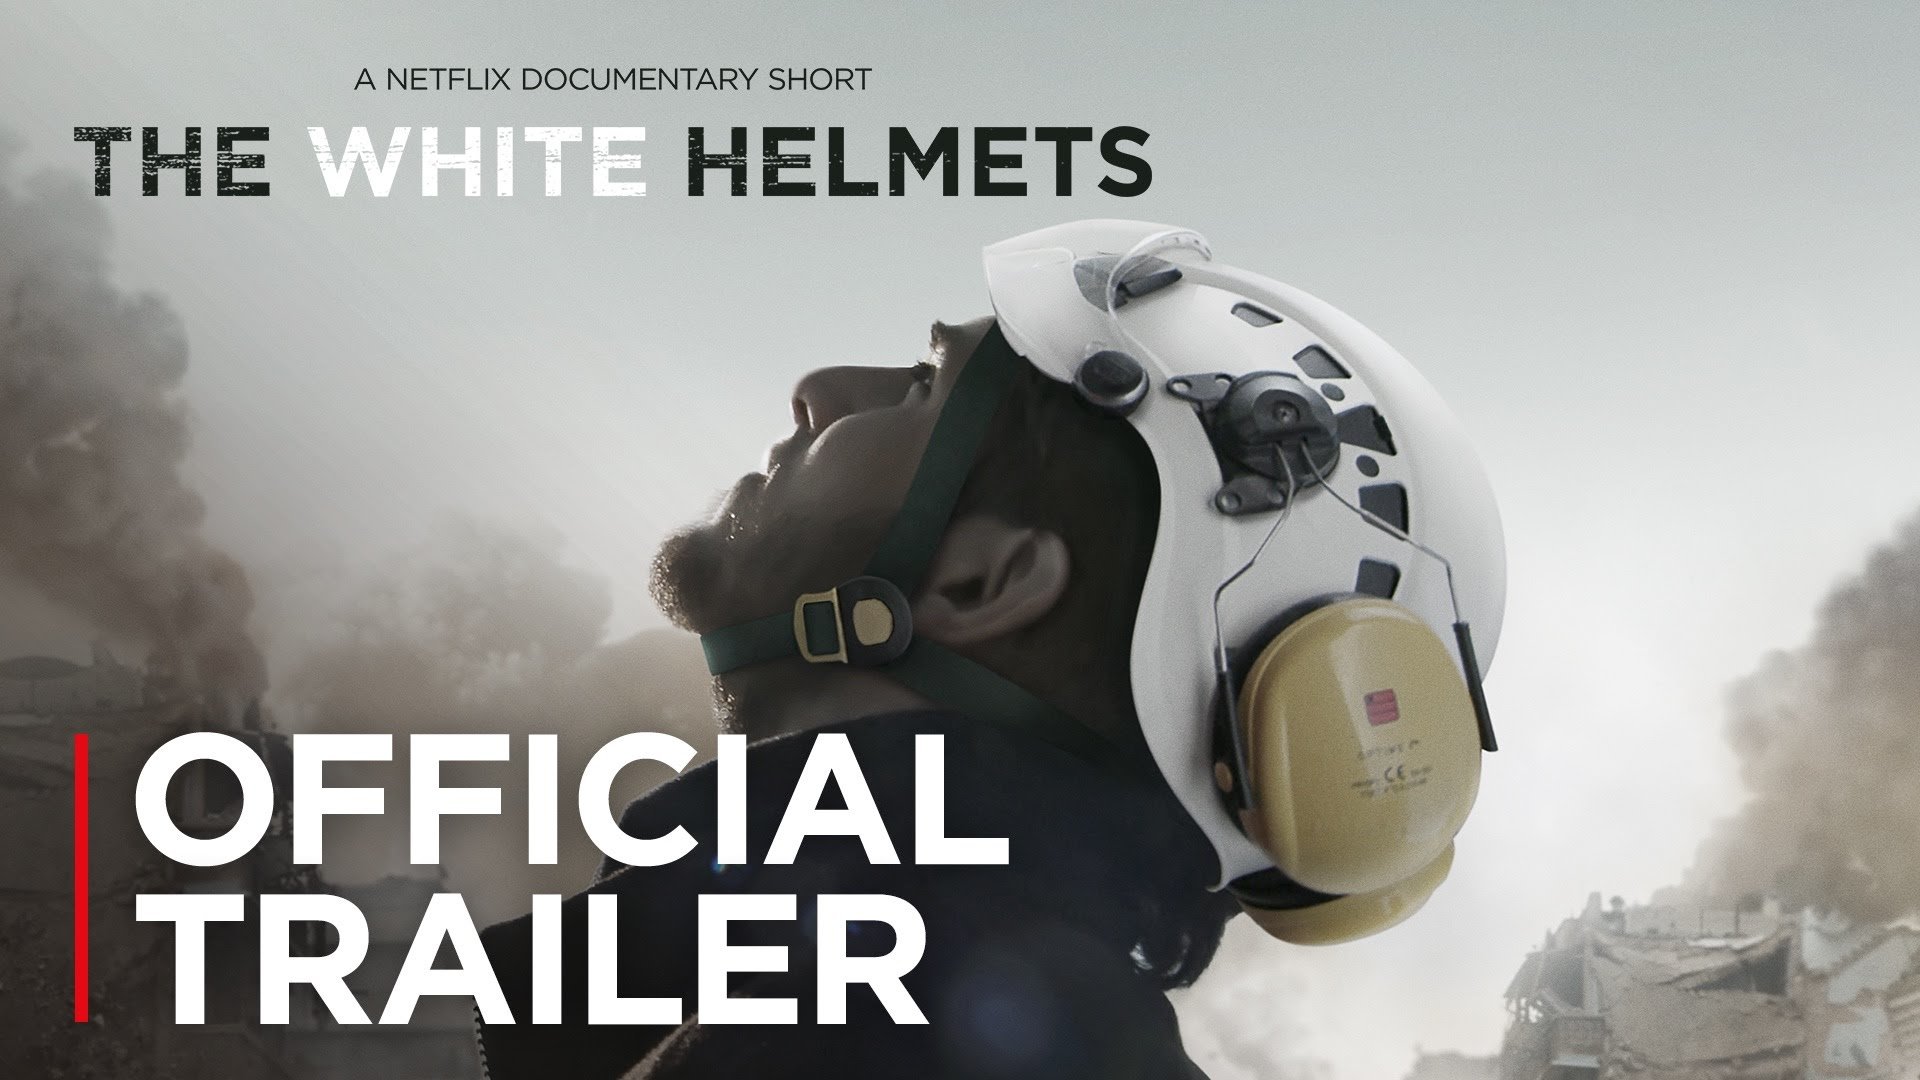 The White Helmets documentary